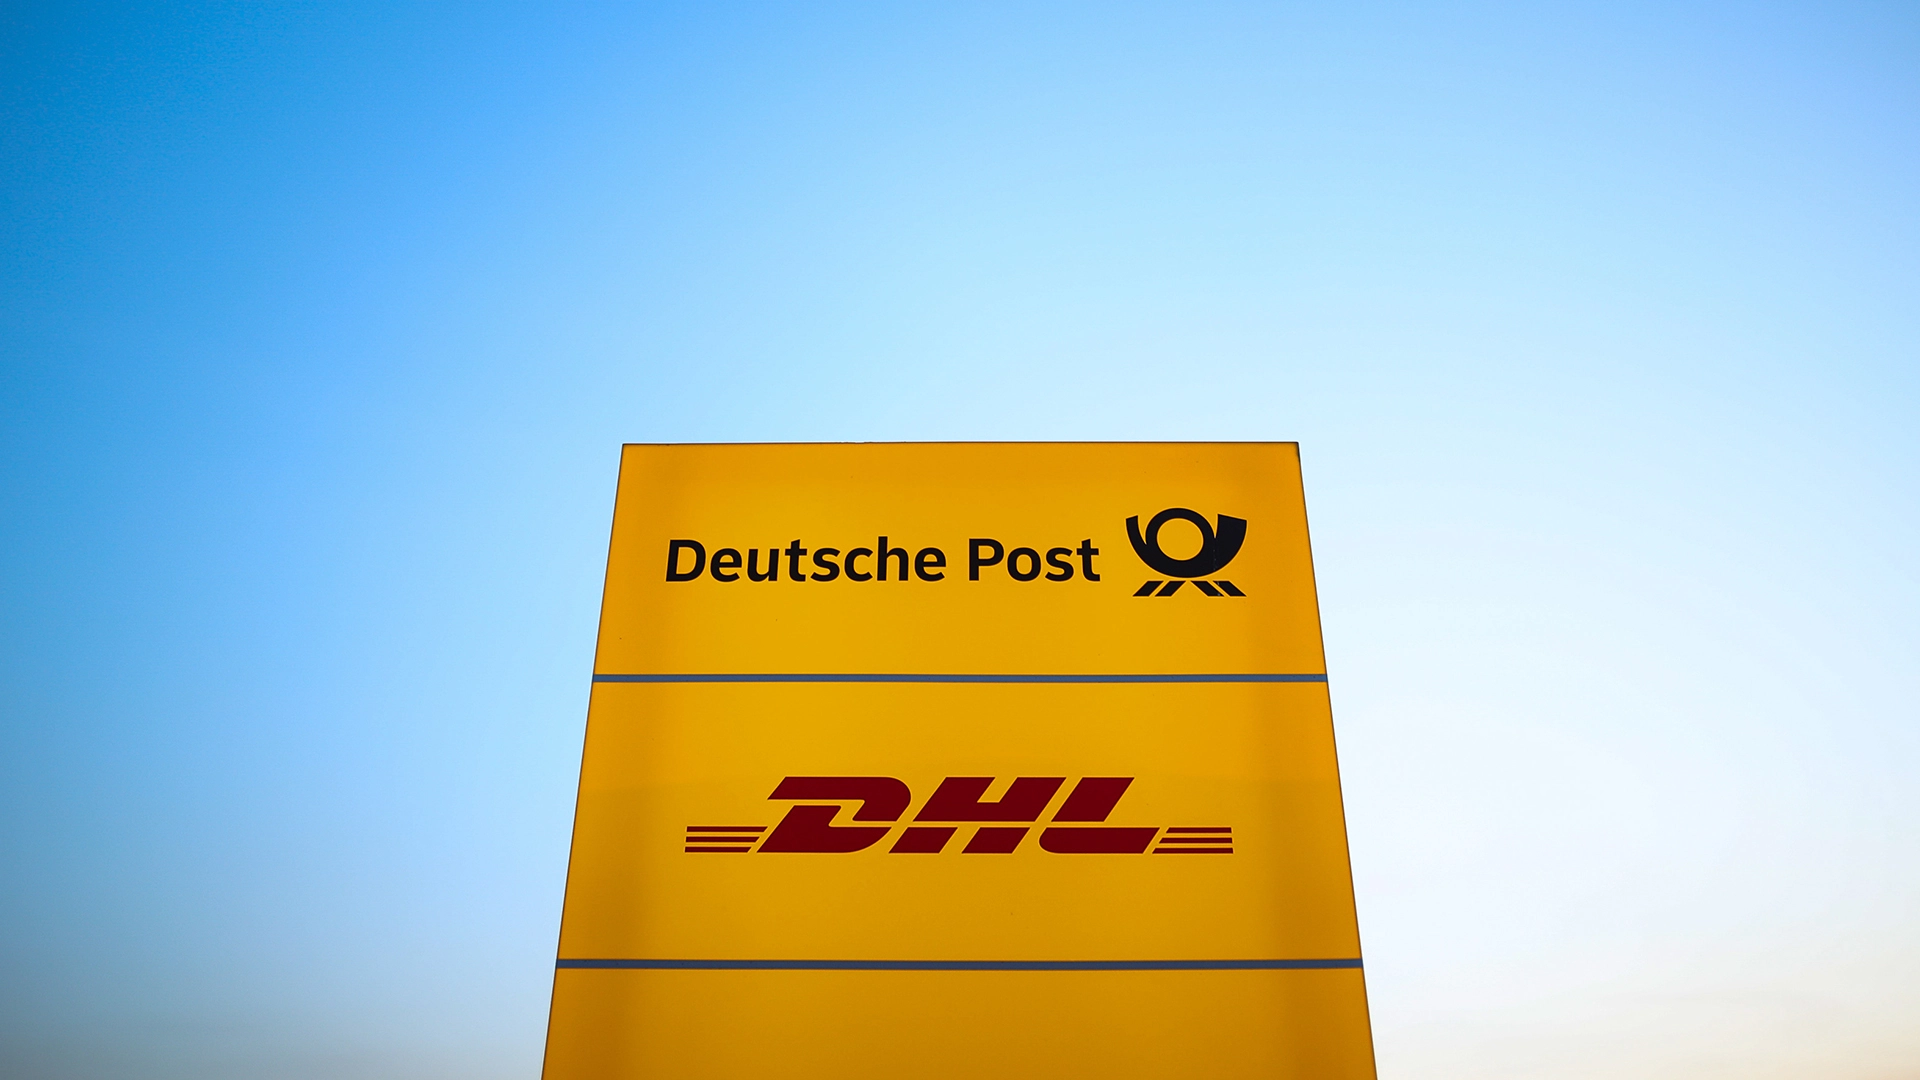 DHL&#8209;Aktie: Schlechte Nachrichten für die Deutsche Post (Foto: Rainer Keuenhof/picture alliance/dpa)